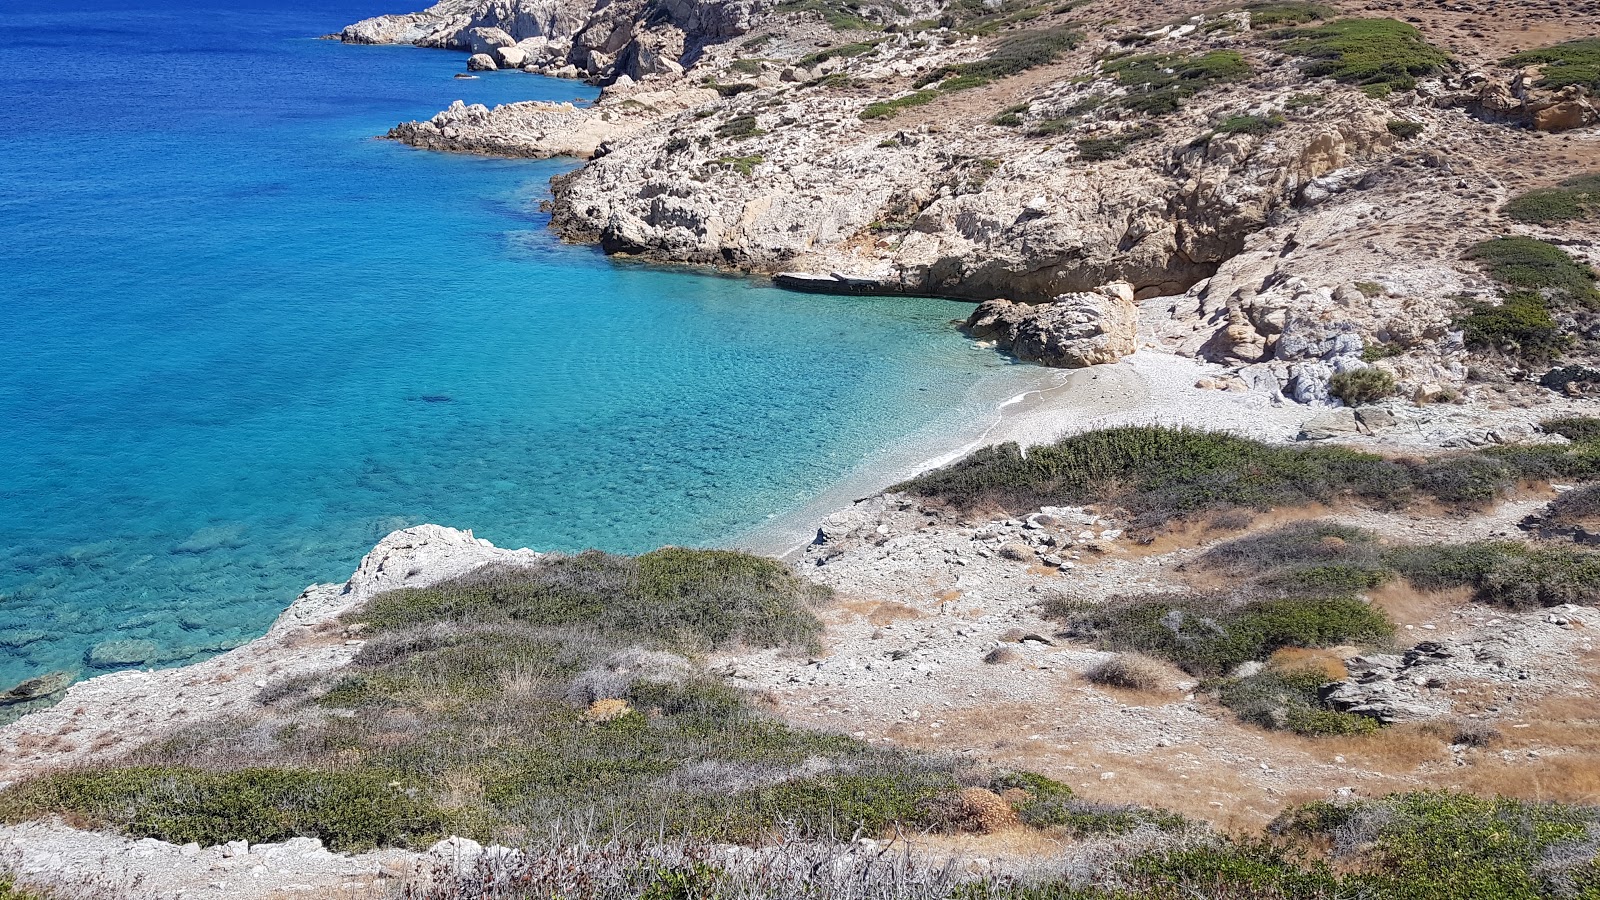 Maltas beach'in fotoğrafı turkuaz saf su yüzey ile